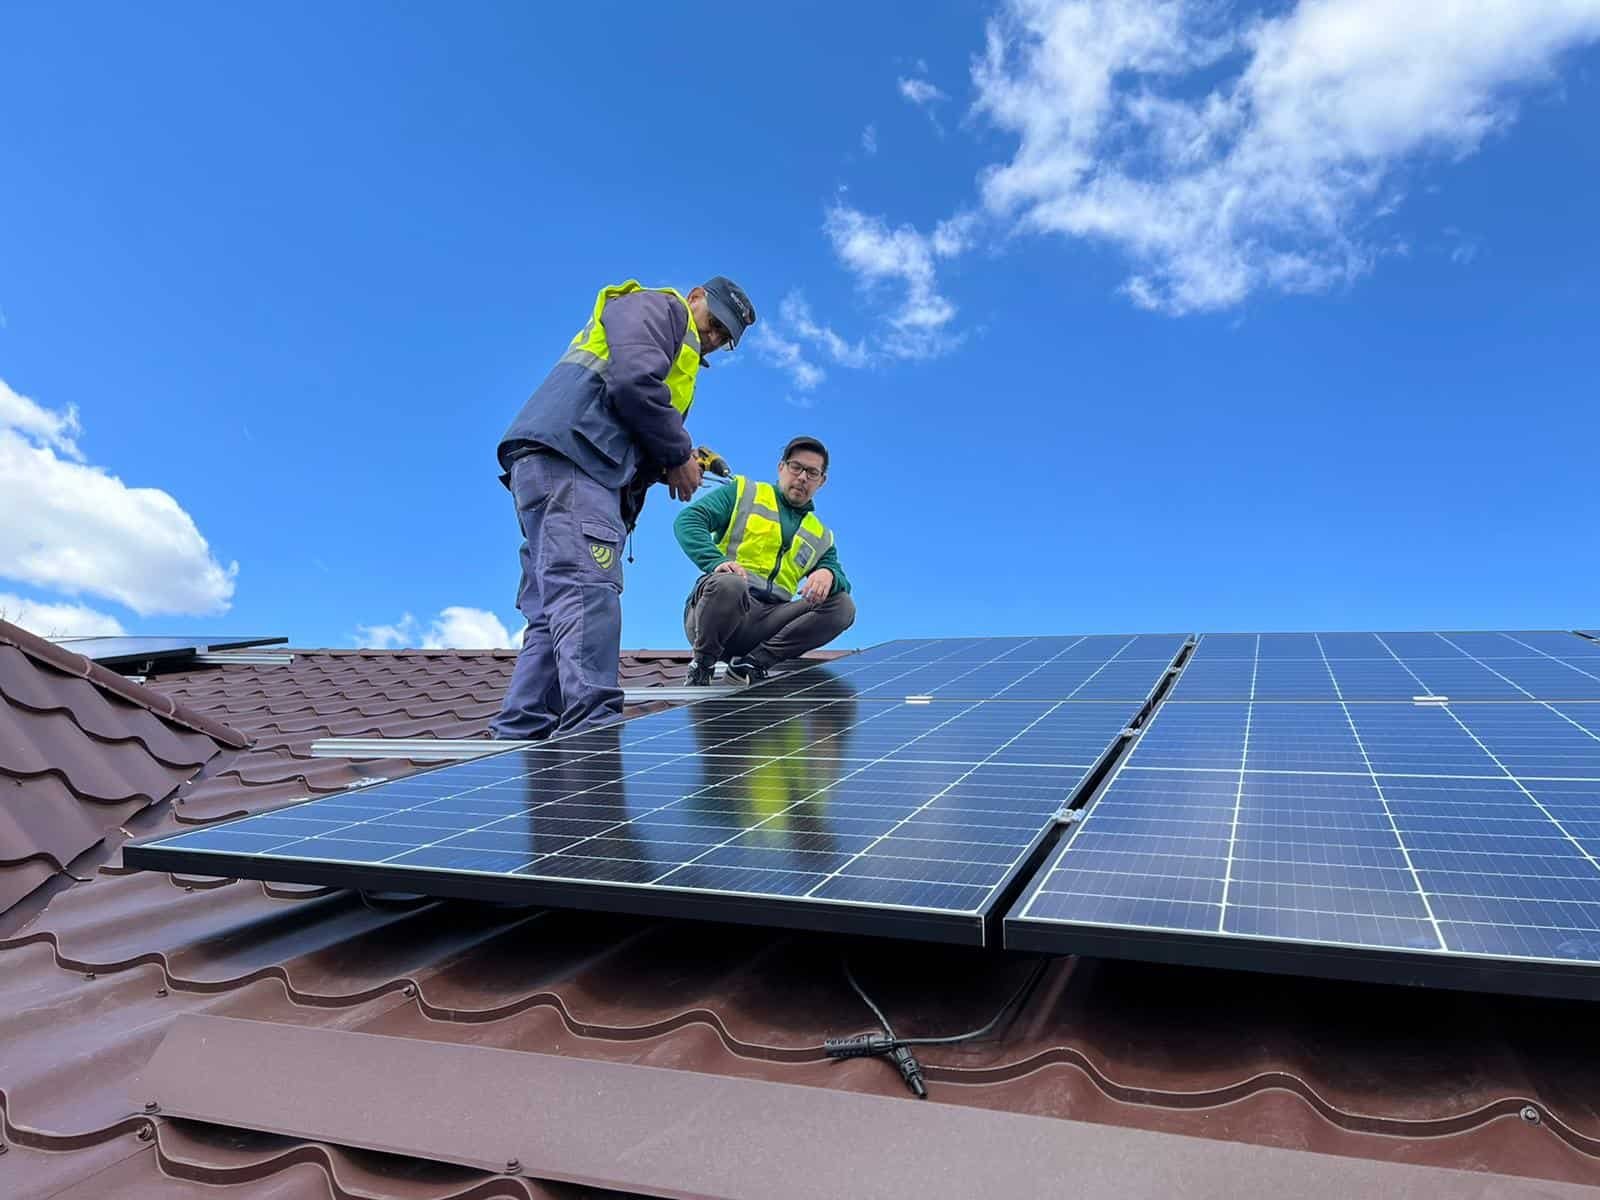  Noi reglementări în favoarea celor care își pun panouri fotovoltaice. A fost dublată limita de putere instalată care poate fi compensată cantitativ